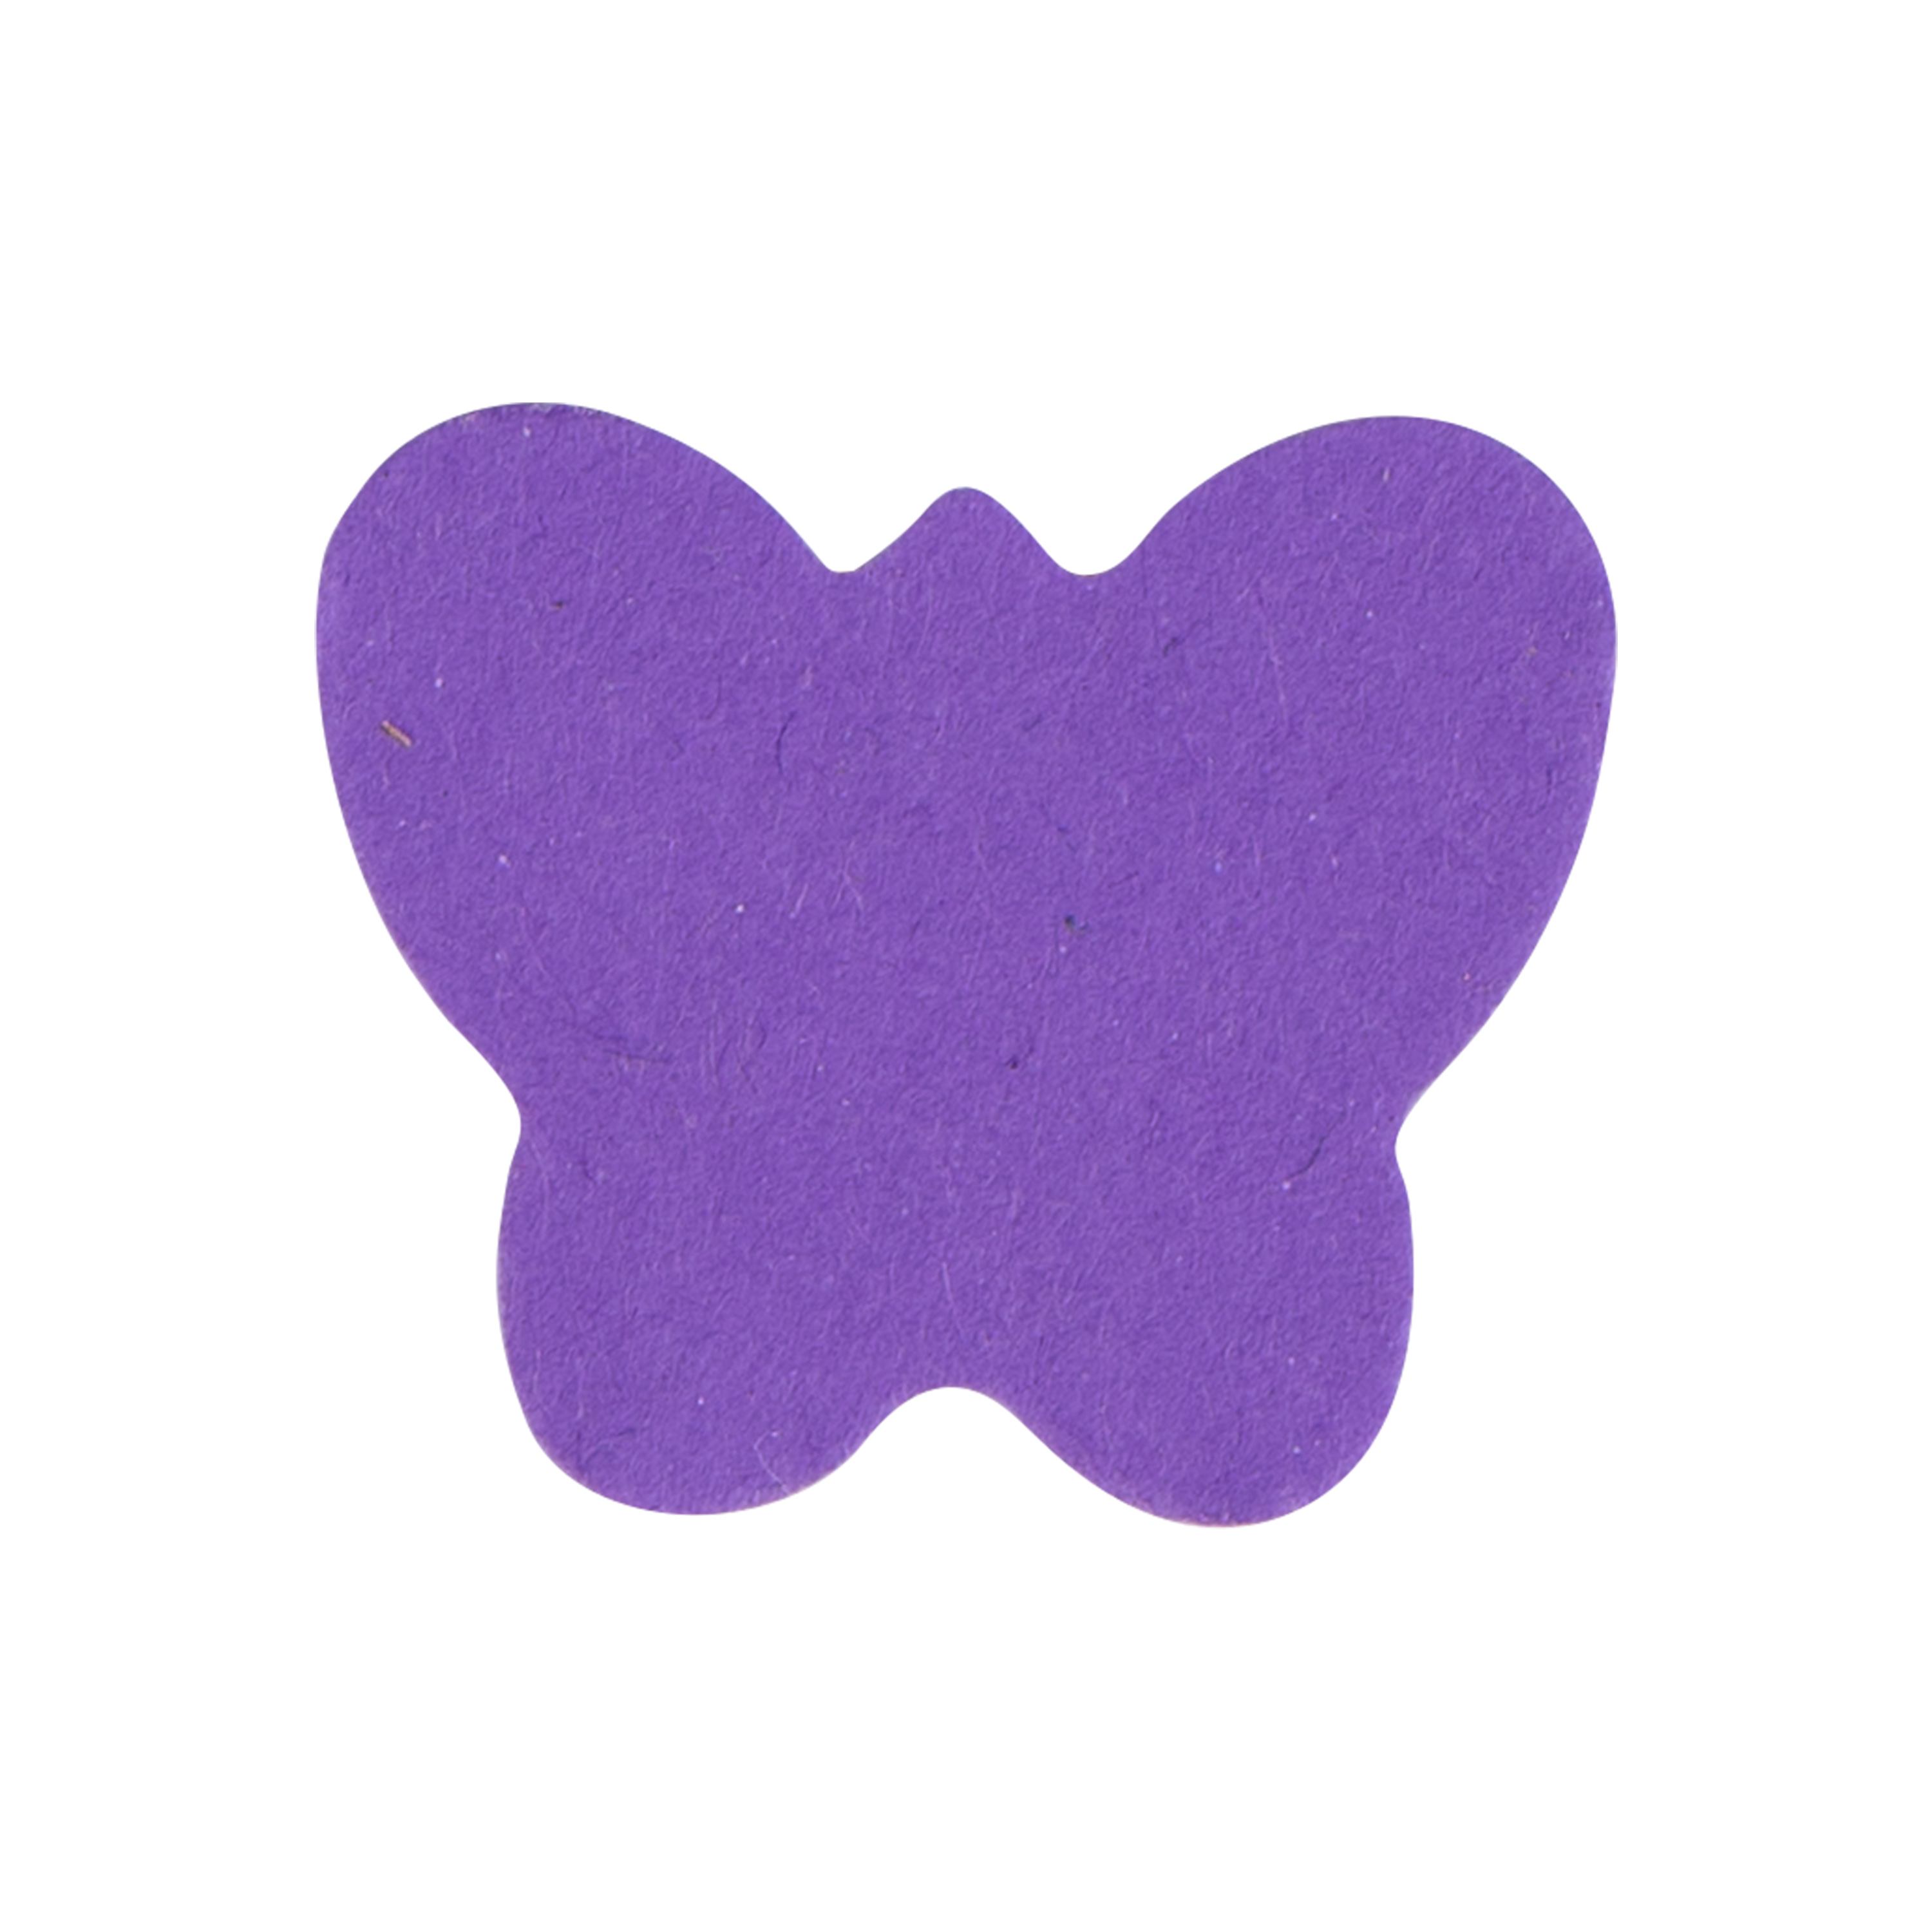 Stanzer 'Wunderlocher - Schmetterling', Ø ca. 2,5 cm